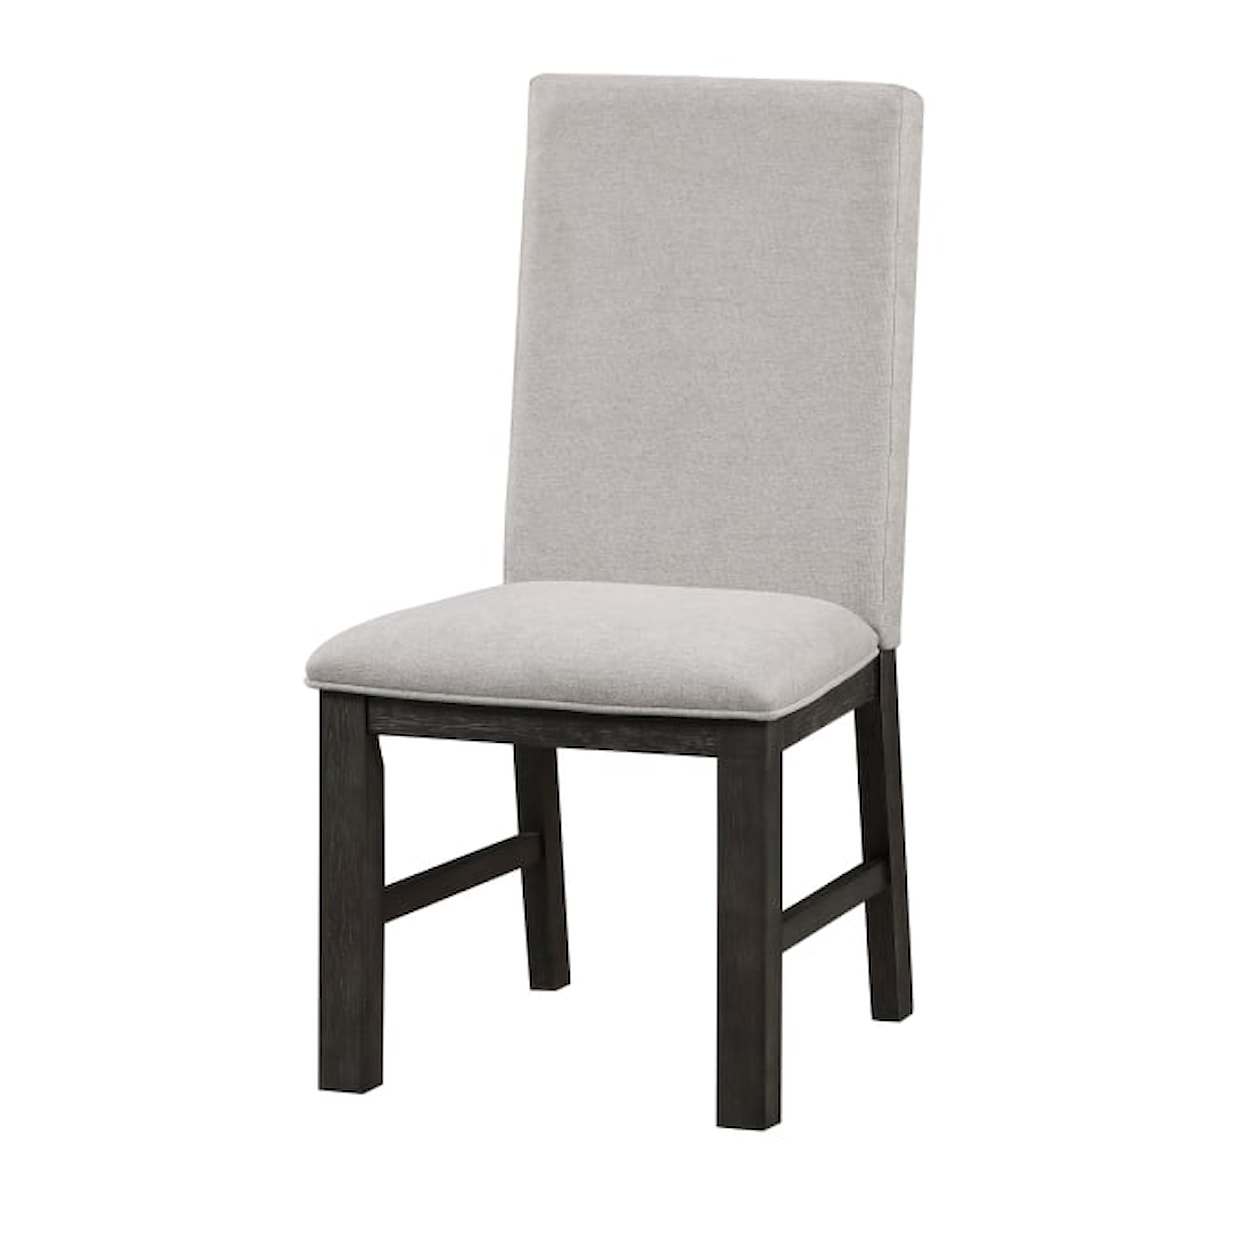 Homelegance Furniture Orem Side Chair